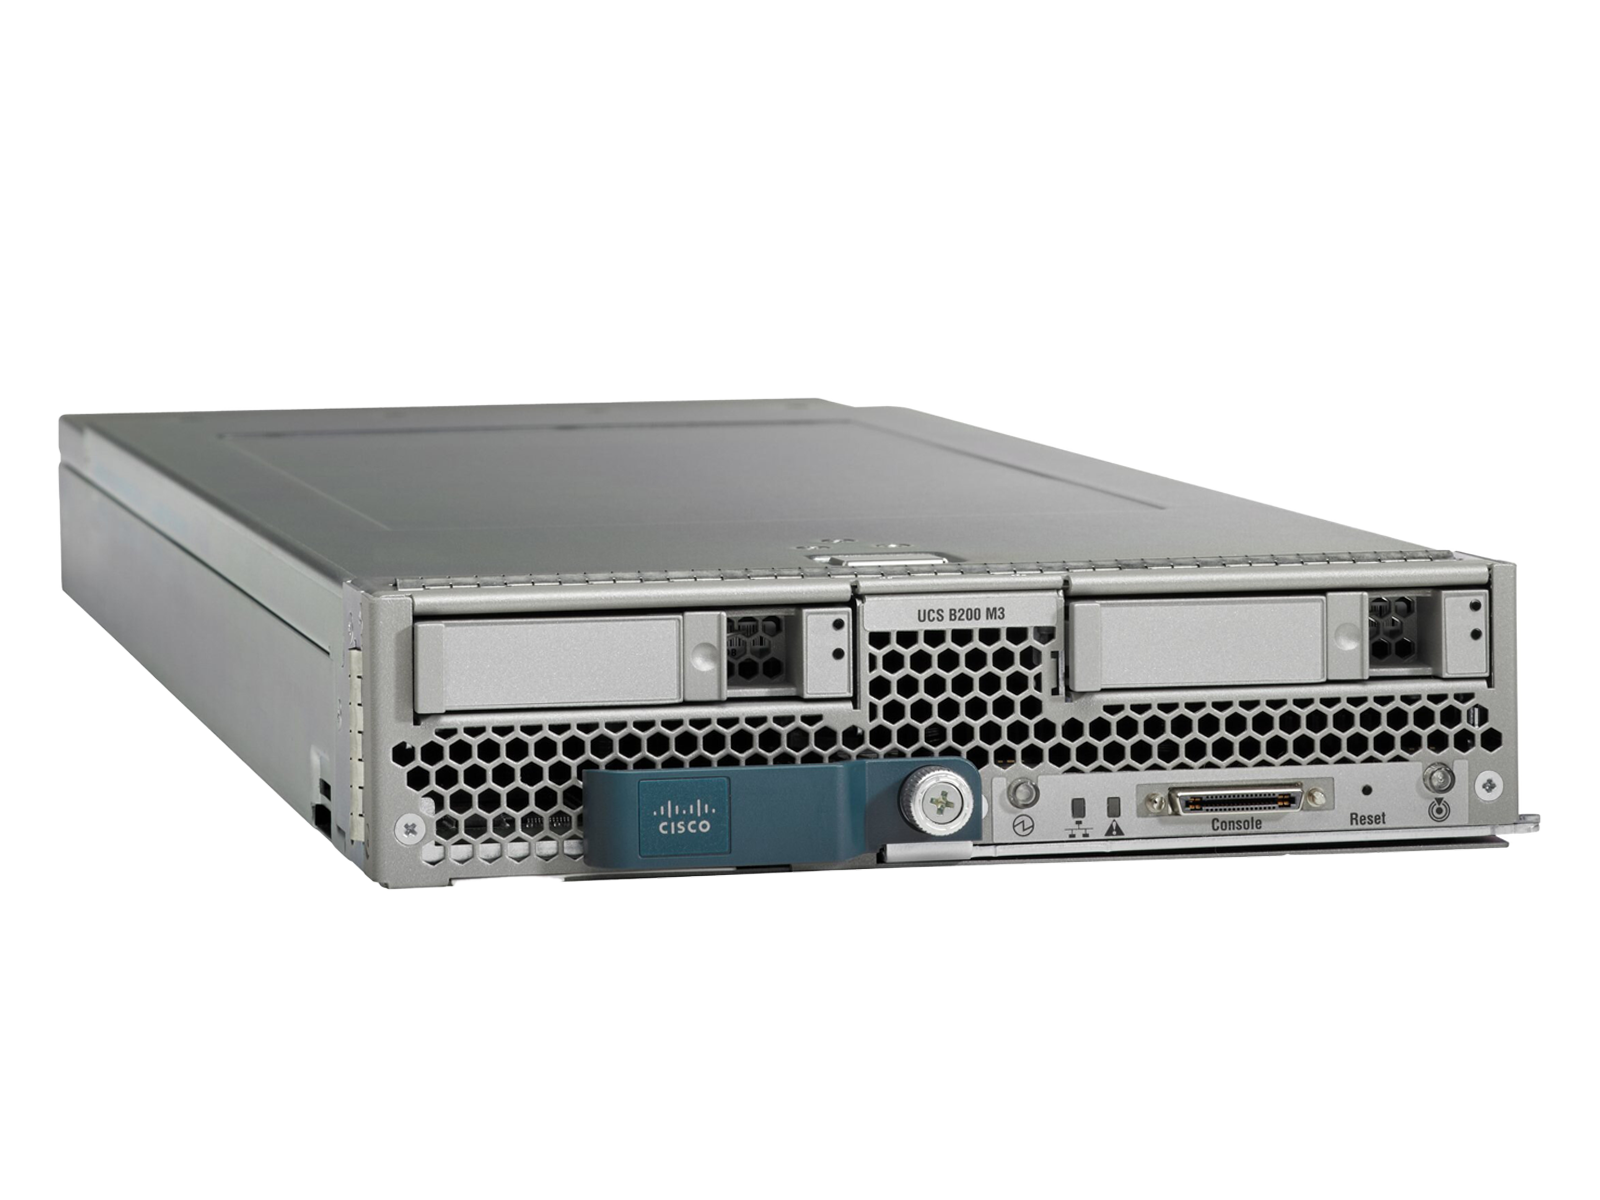 Cisco B200 M3 Dual E5-2670V2 10C 2.50GHz 4x16GB=64GB 1866MHz Blade Server 14900R.